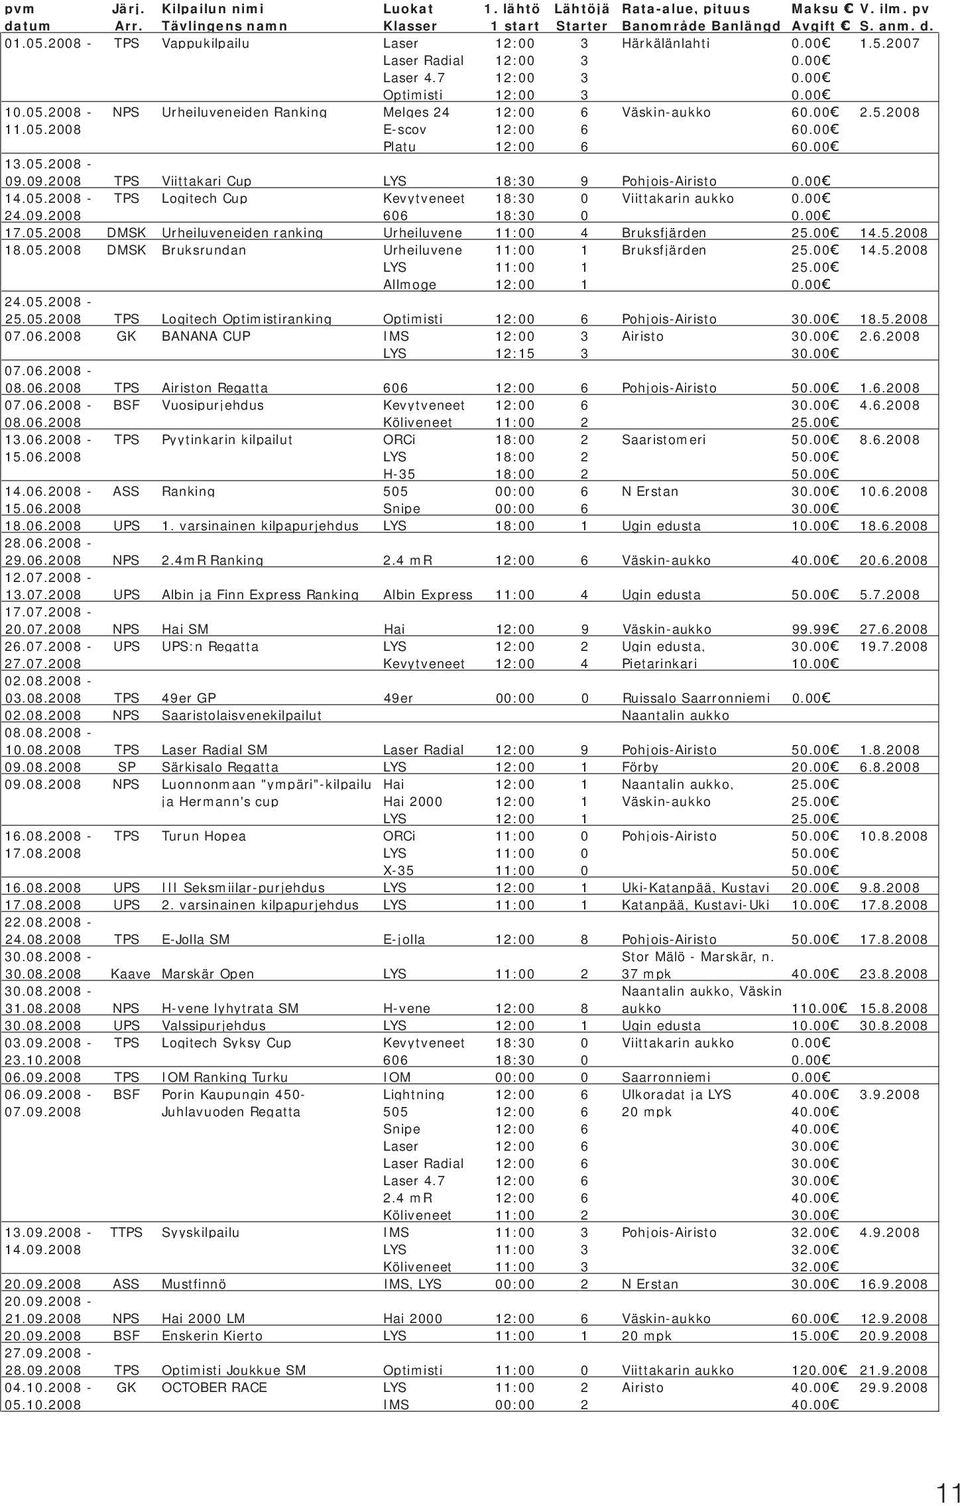 2008 - NPS Urheiluveneiden Ranking Melges 24 12:00 6 Väskin-aukko 60.00 2.5.2008 11.05.2008 E-scov 12:00 6 60.00 Platu 12:00 6 60.00 13.05.2008-09.